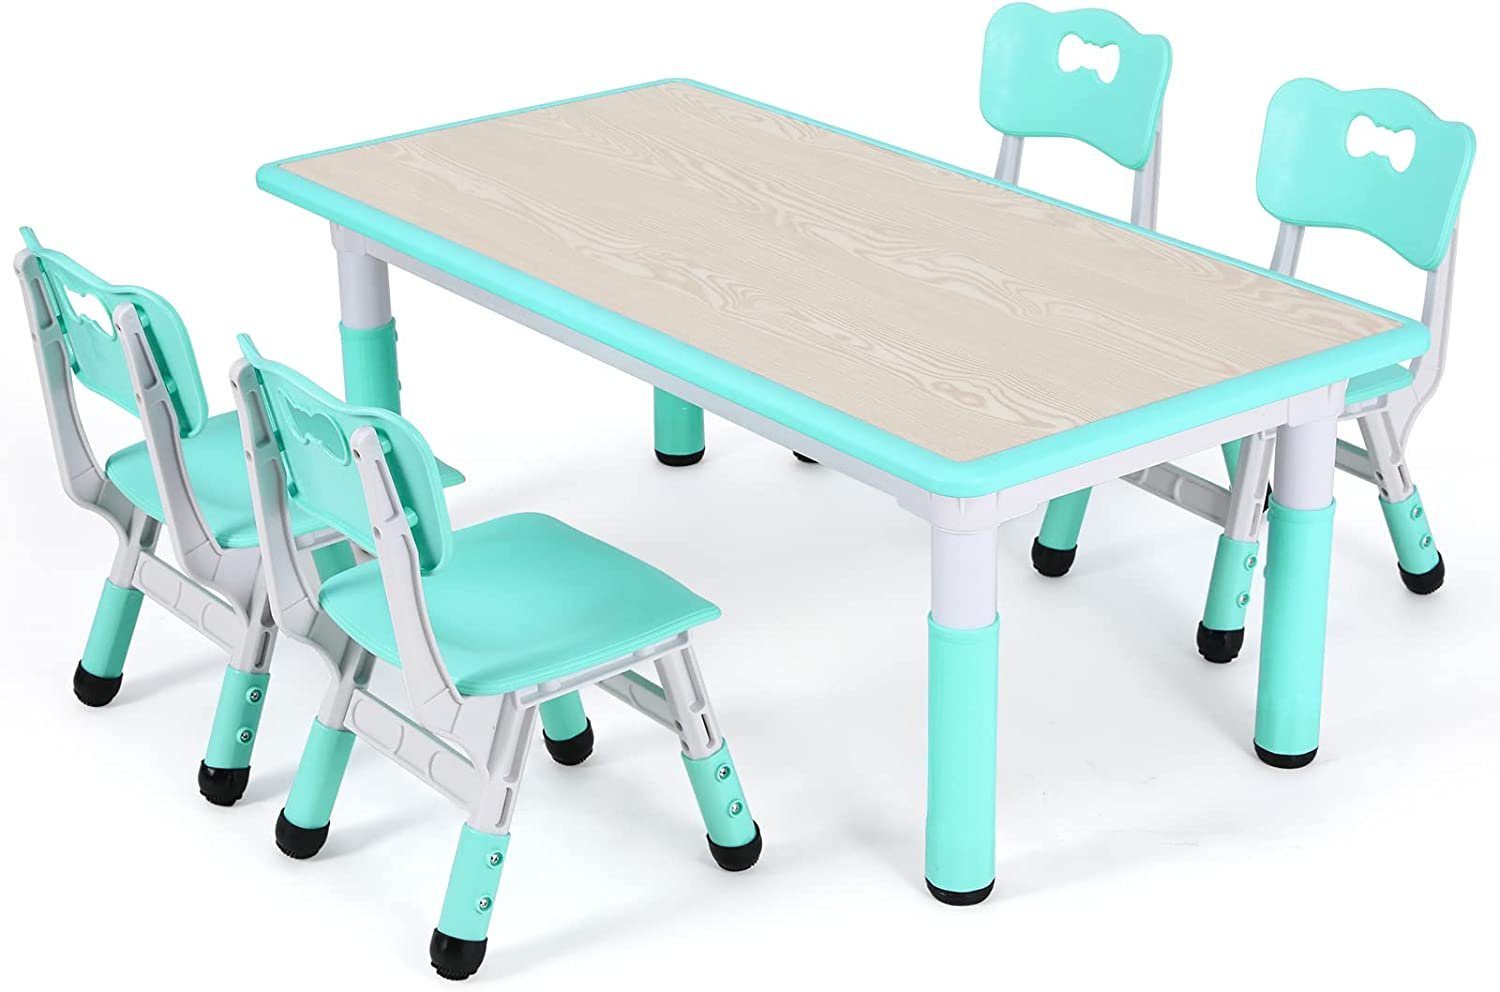 TLGREEN Kindersitzgruppe Kindertisch mit 4 Stühlen, Tisch Stuhl Set Höhenverstellbar Minzgrün